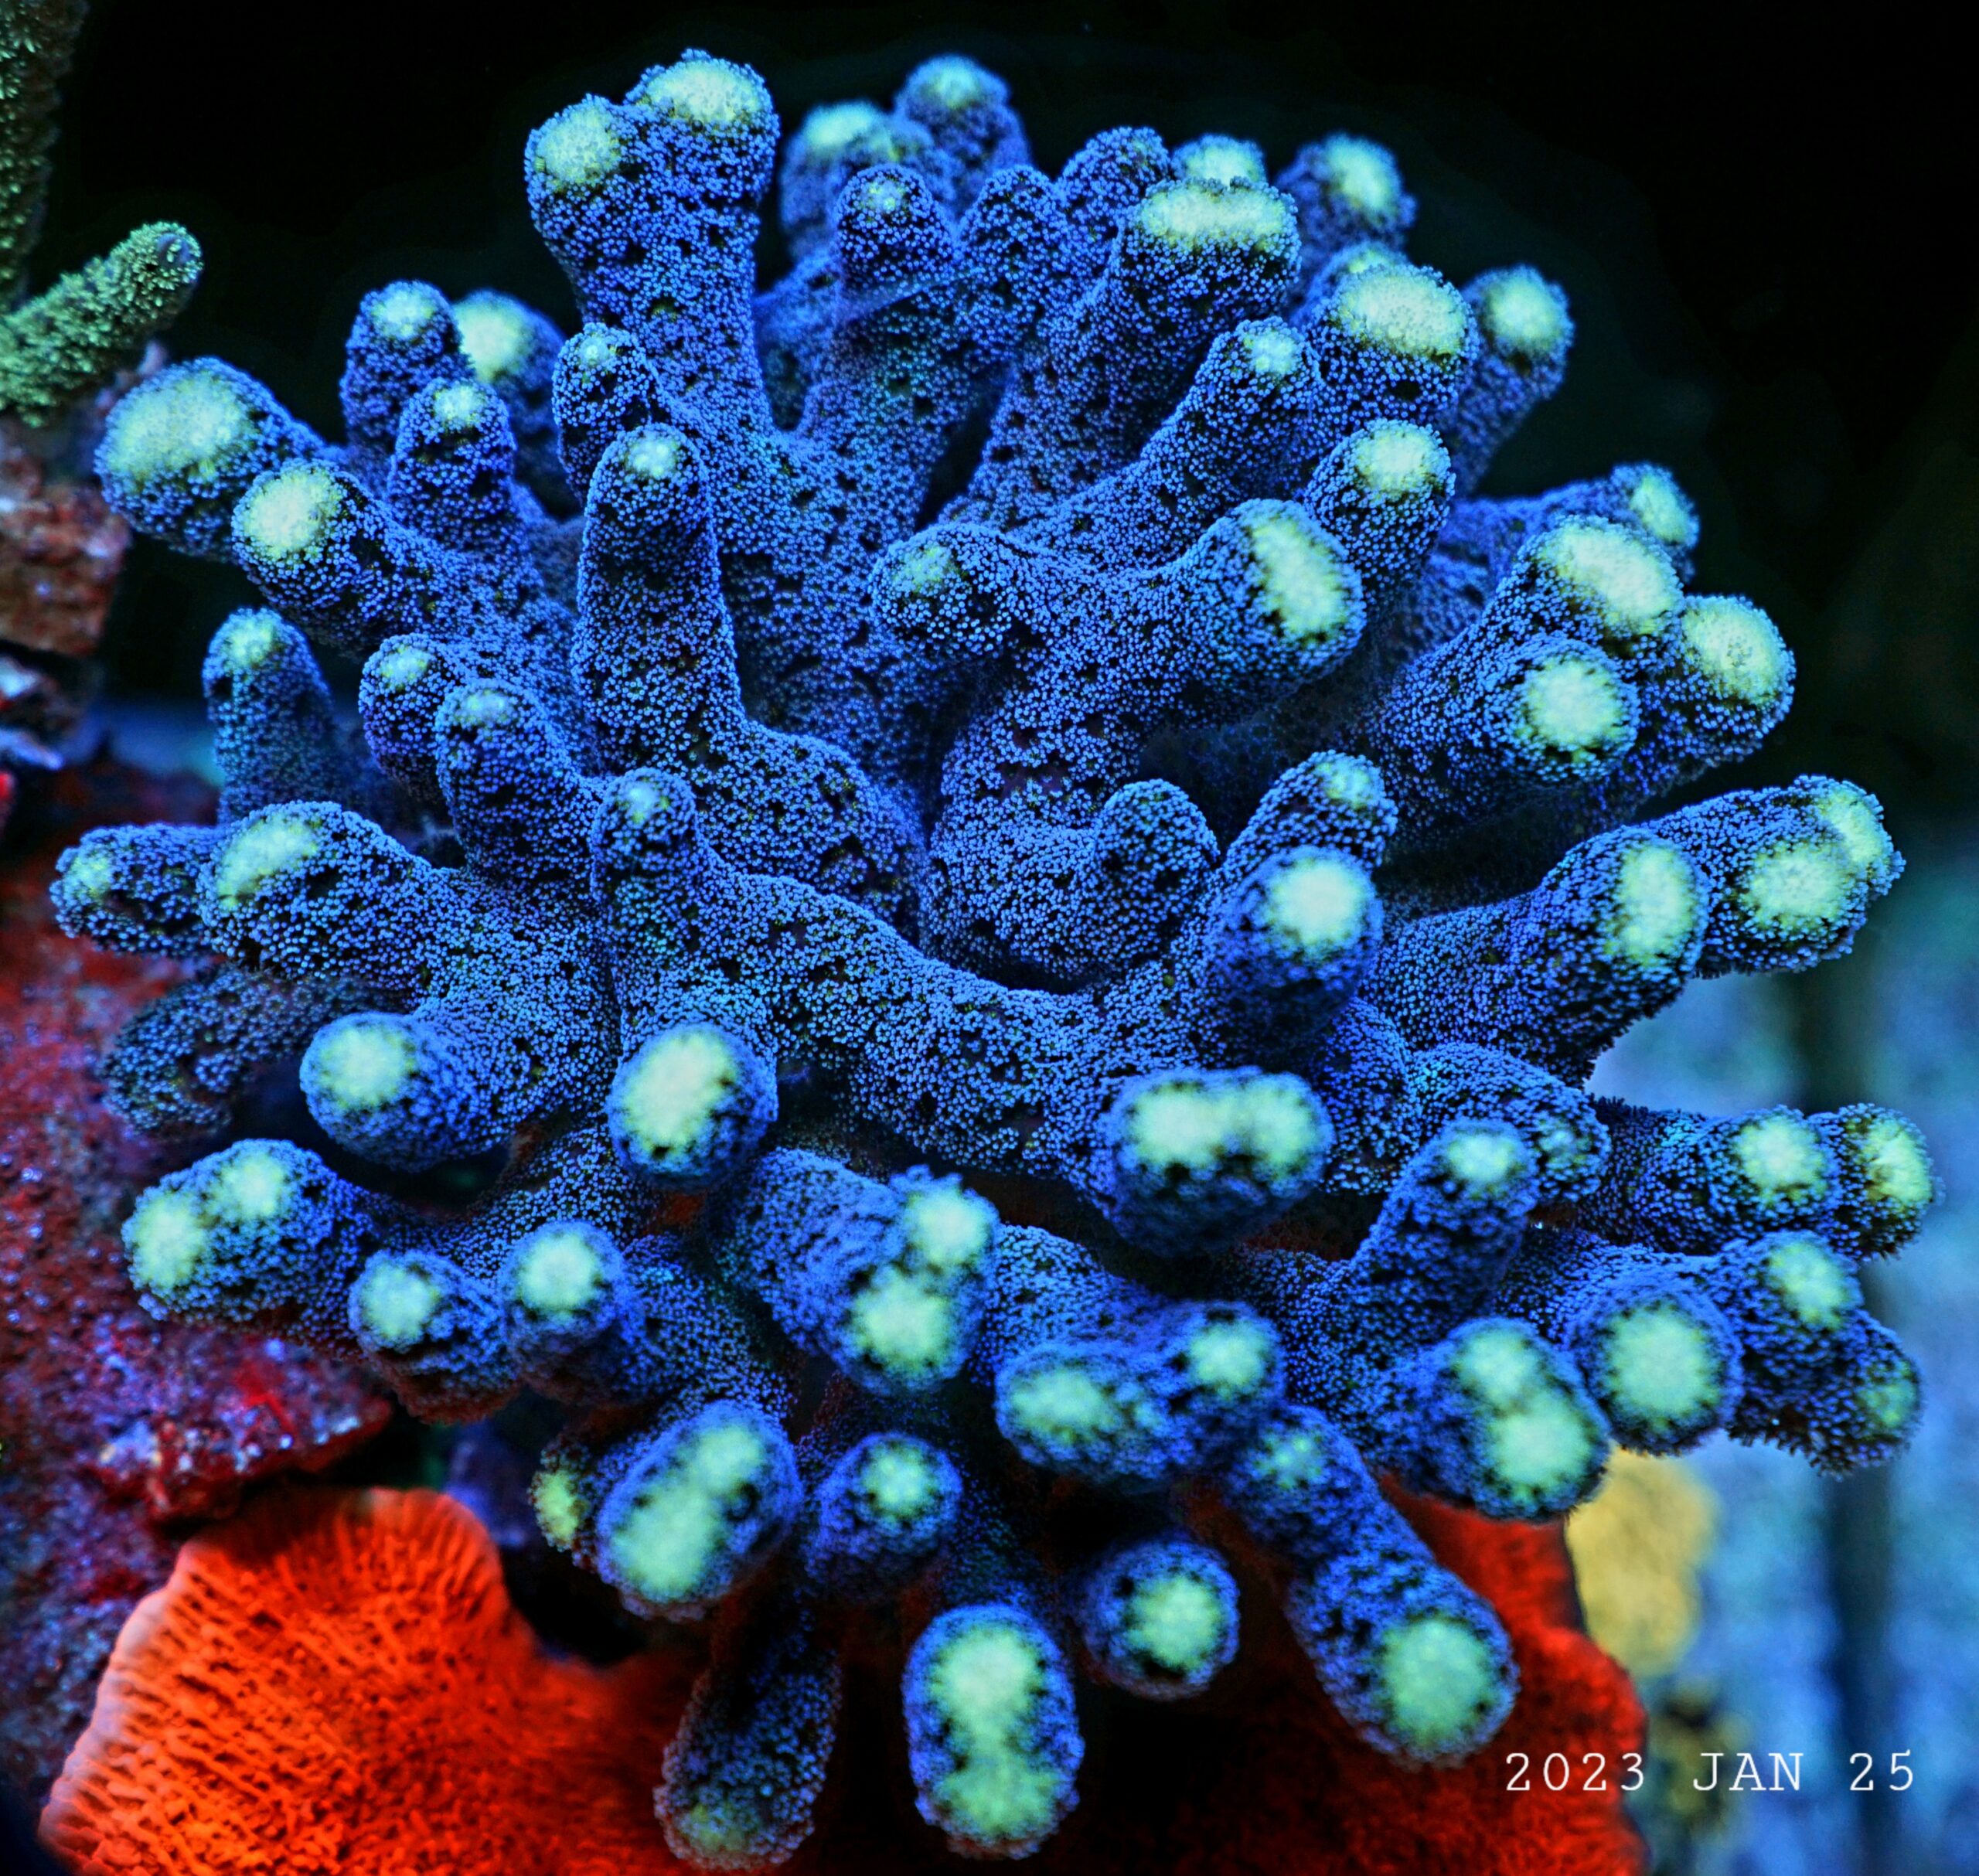 प्रवाल फ्लोरोसेंट के लिए सर्वश्रेष्ठ रीफ एलईडी लाइट18